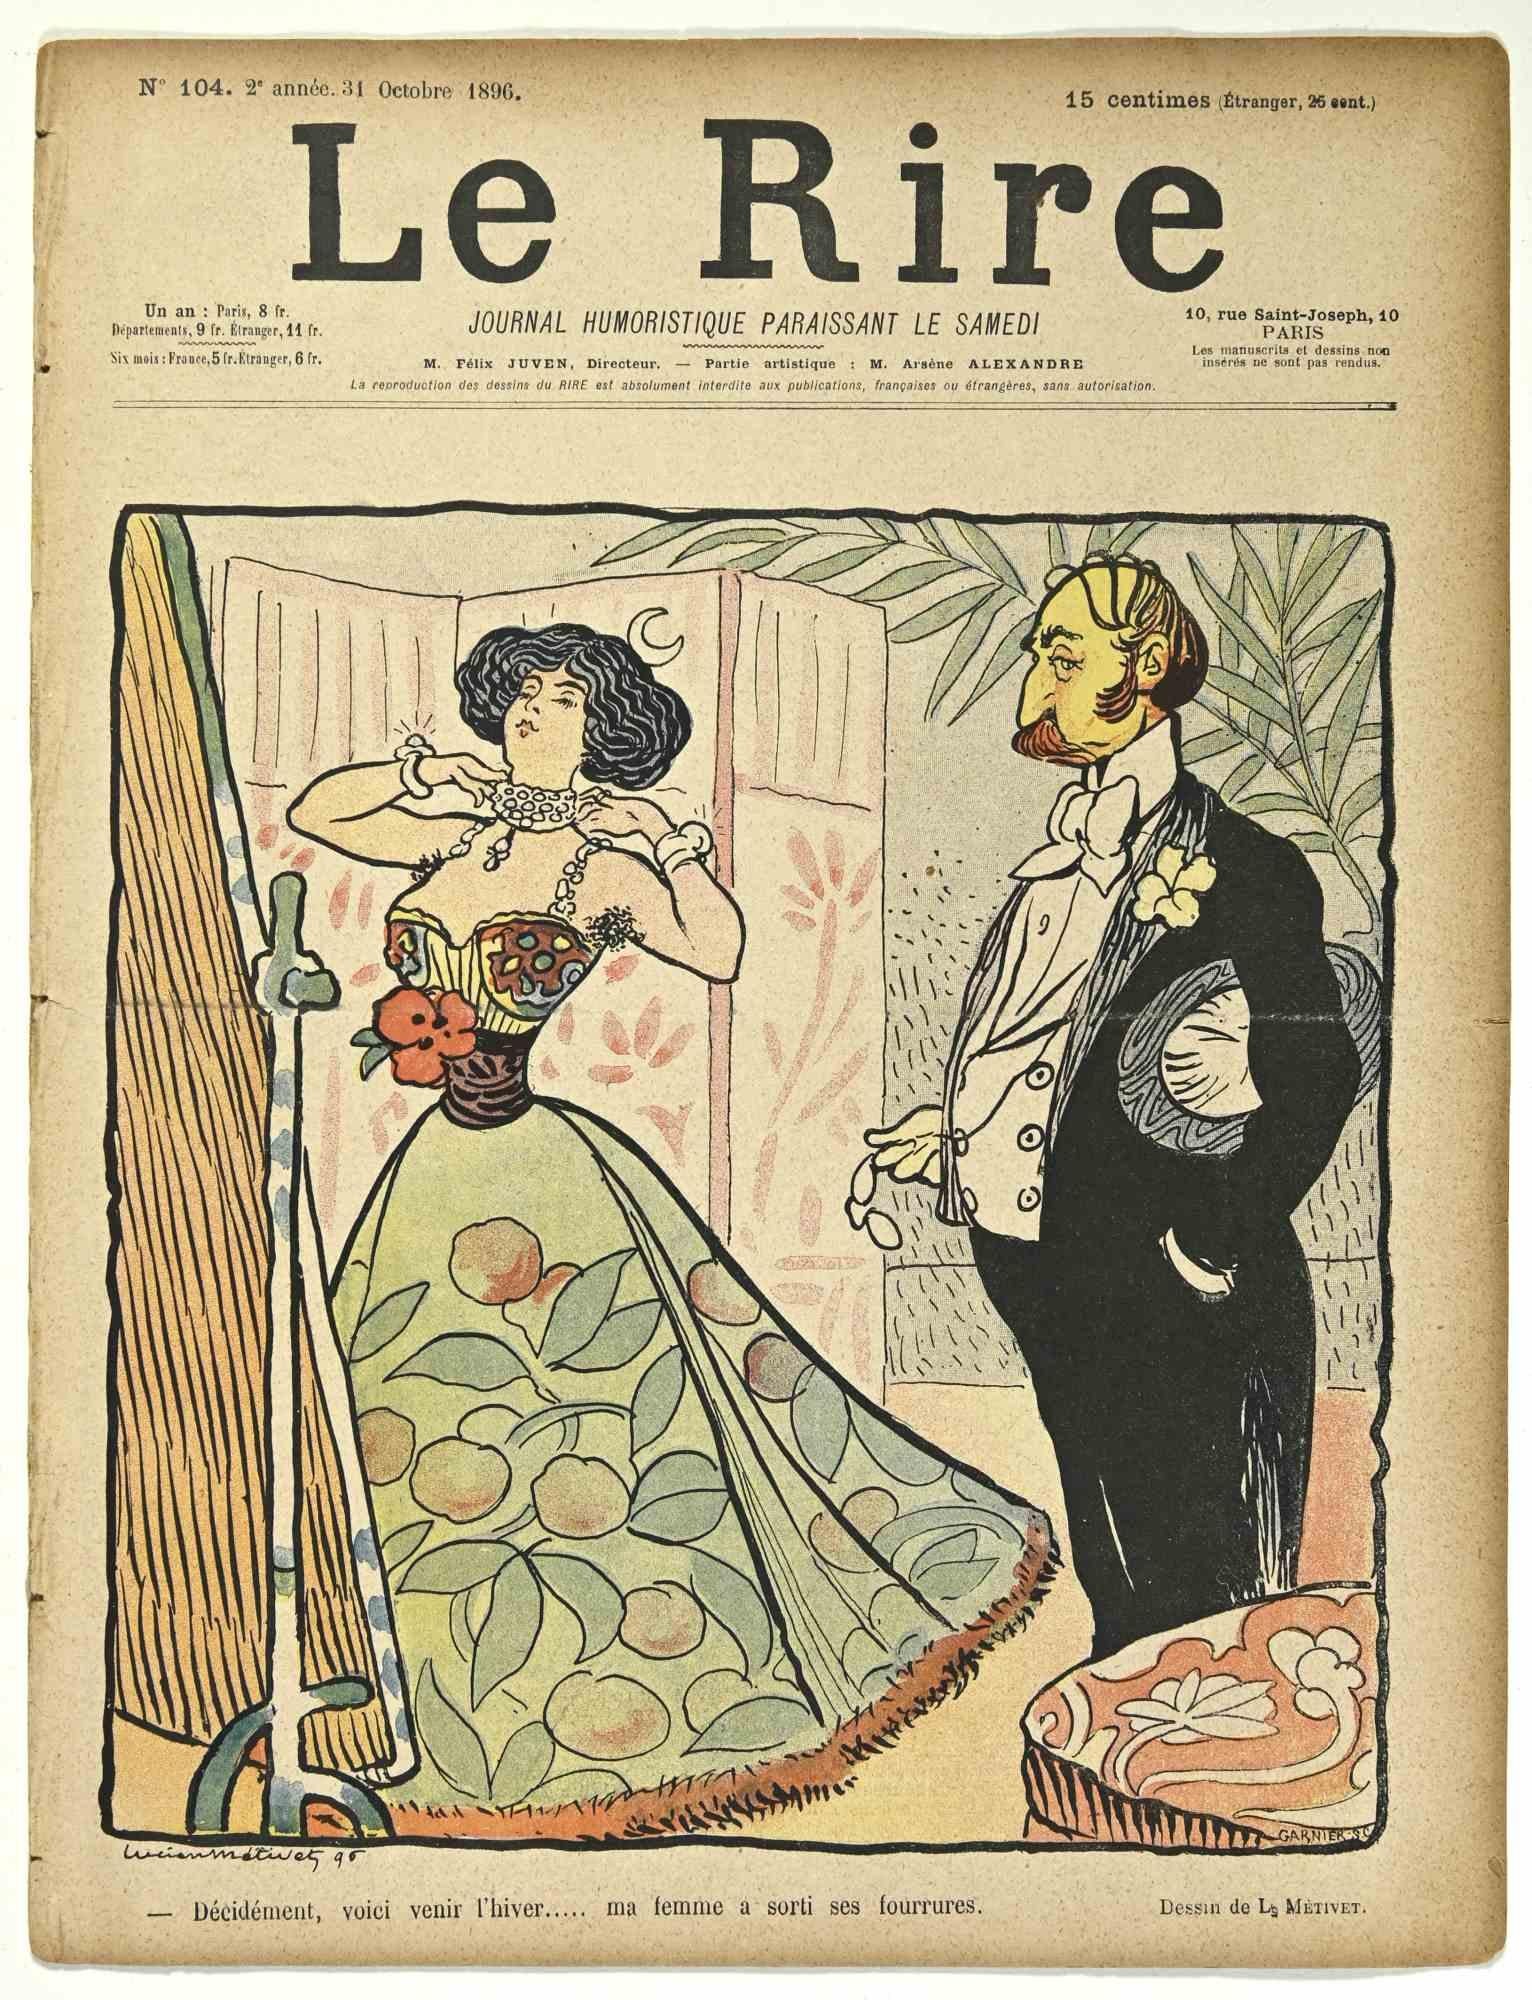 Le Rire - Vintage Comic Magazine - 1896 - Art by Lucien Métivet